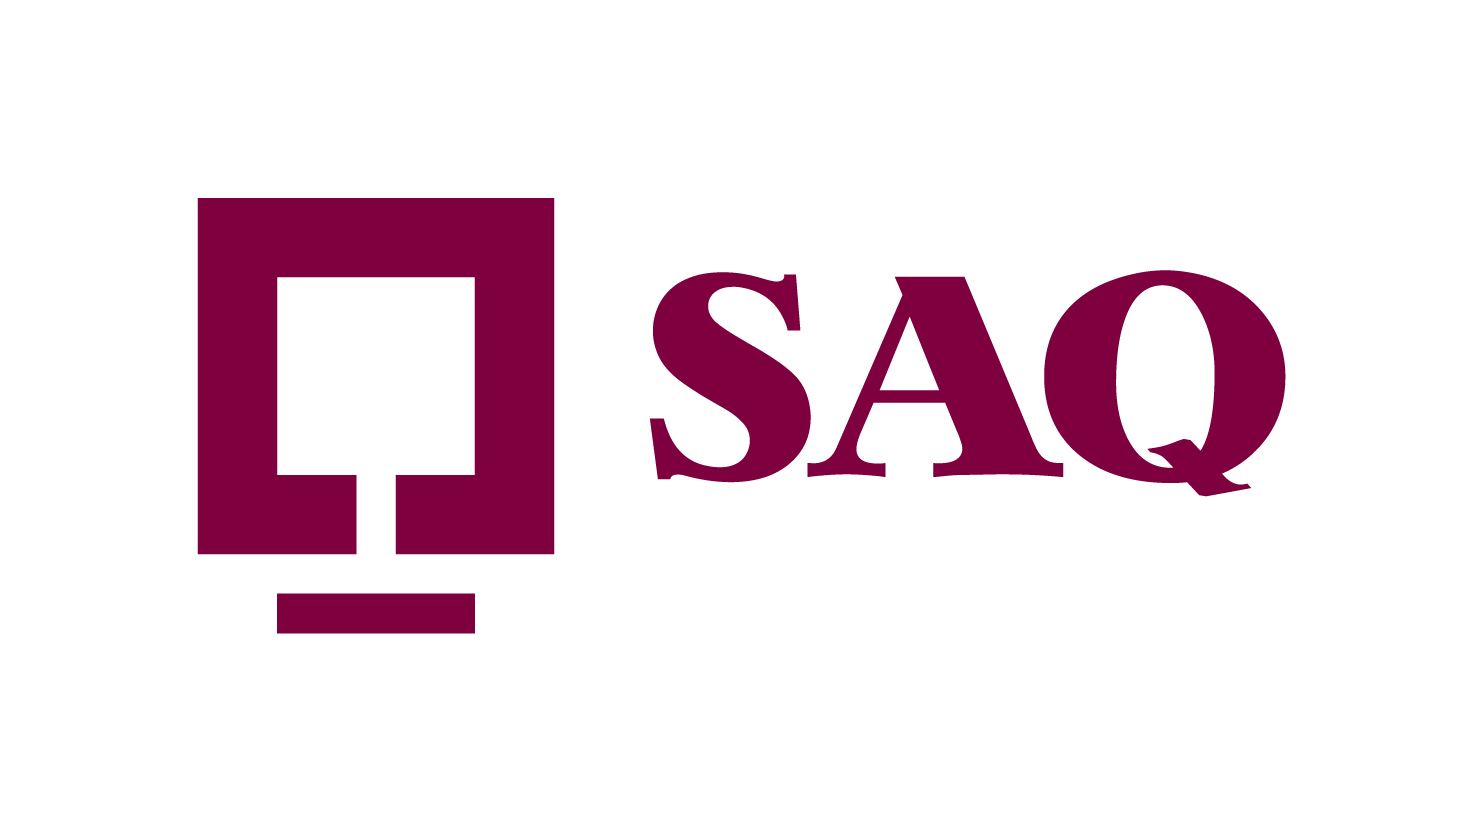 SAQ - Société des alcools du Québec